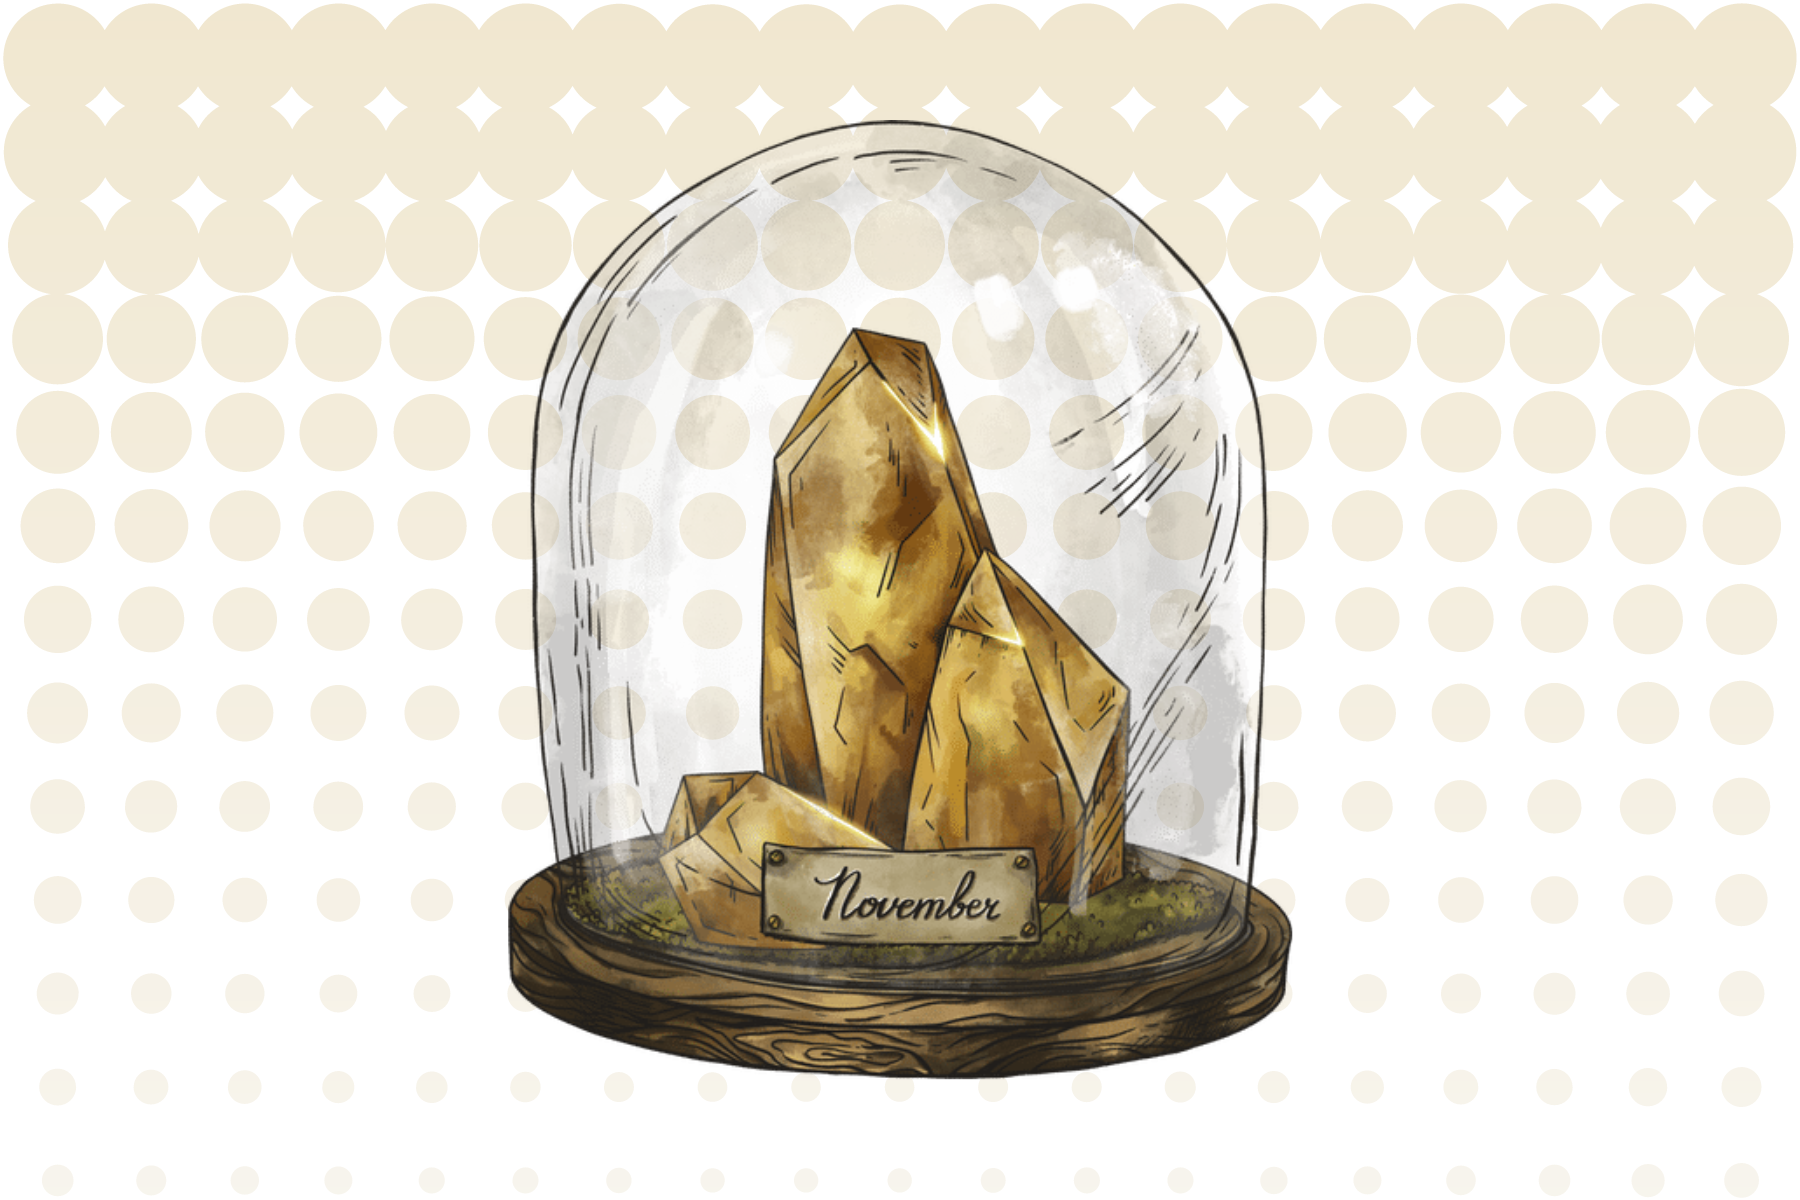 Topaz stone inside a glass jar